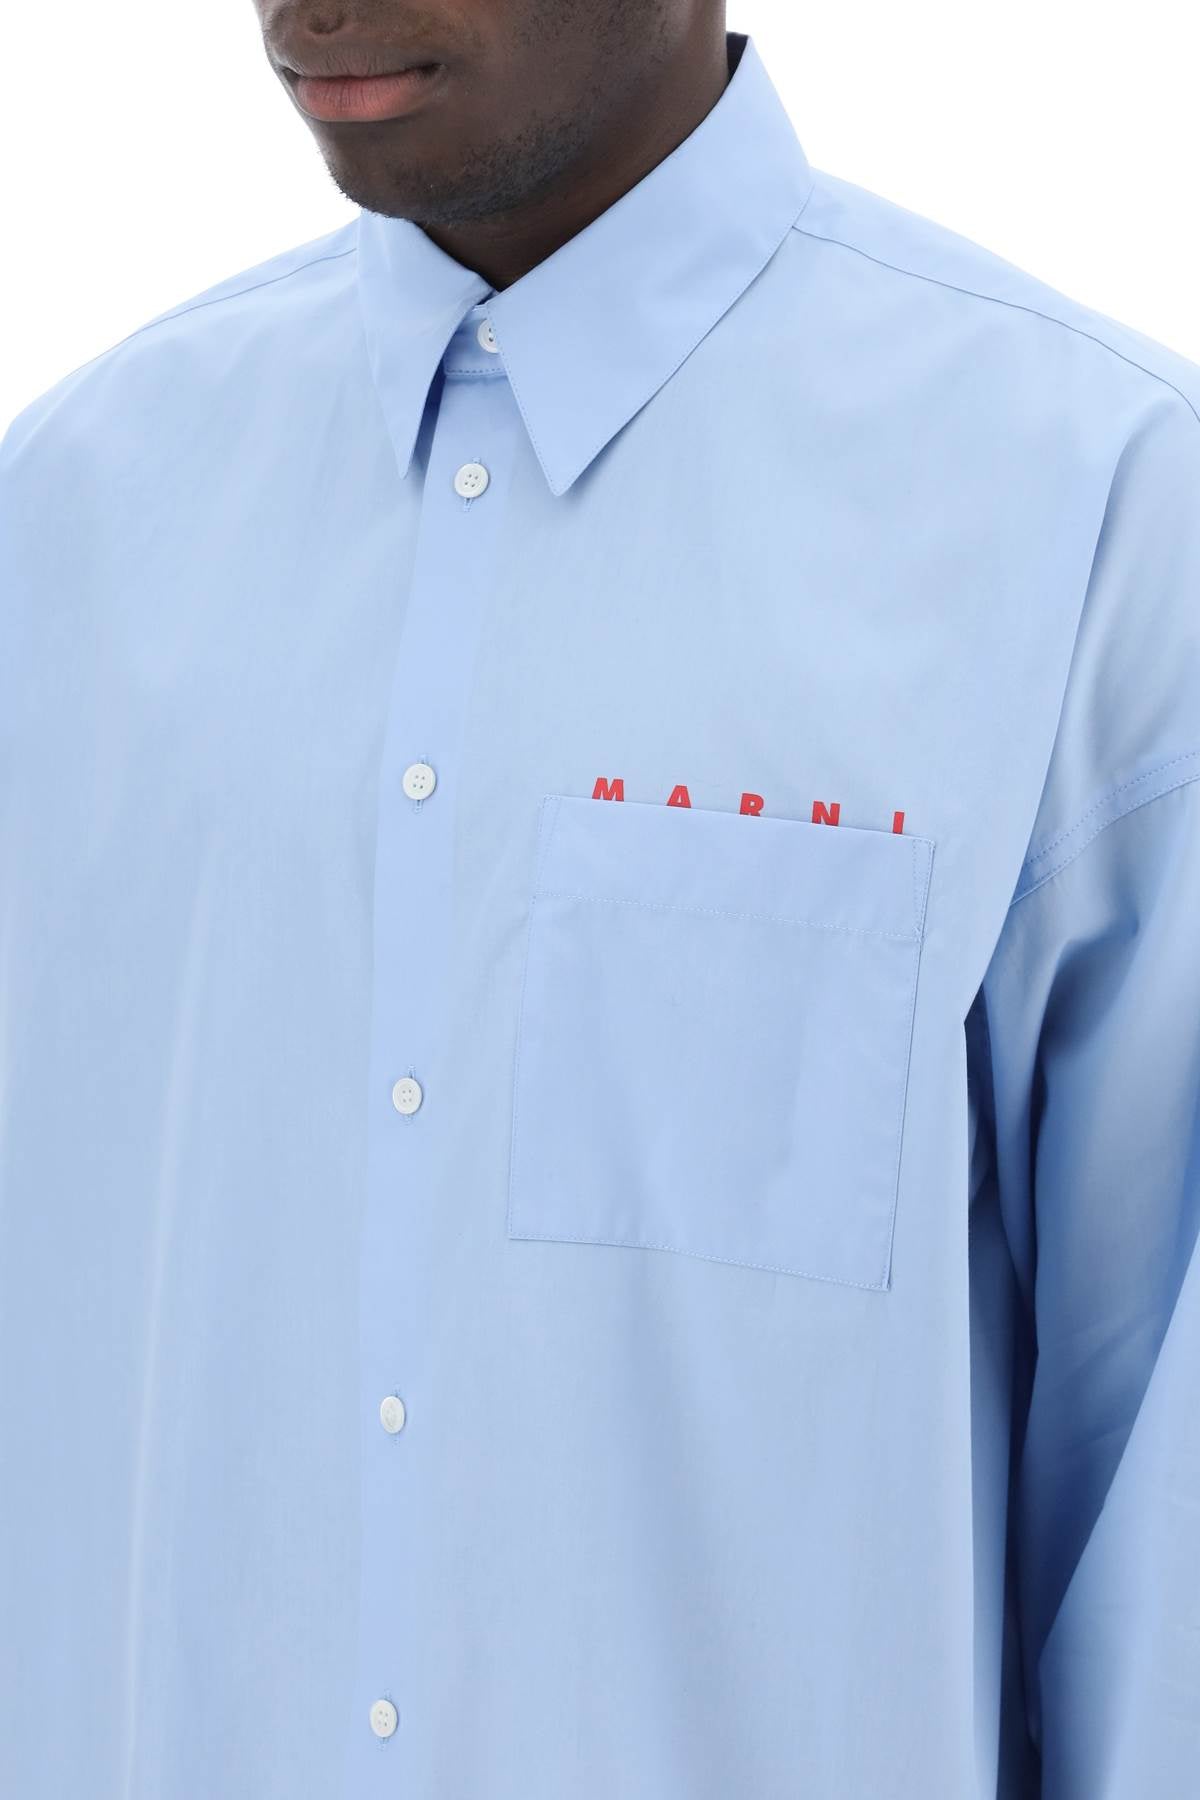 Marni boxy shirt with italian collar-3